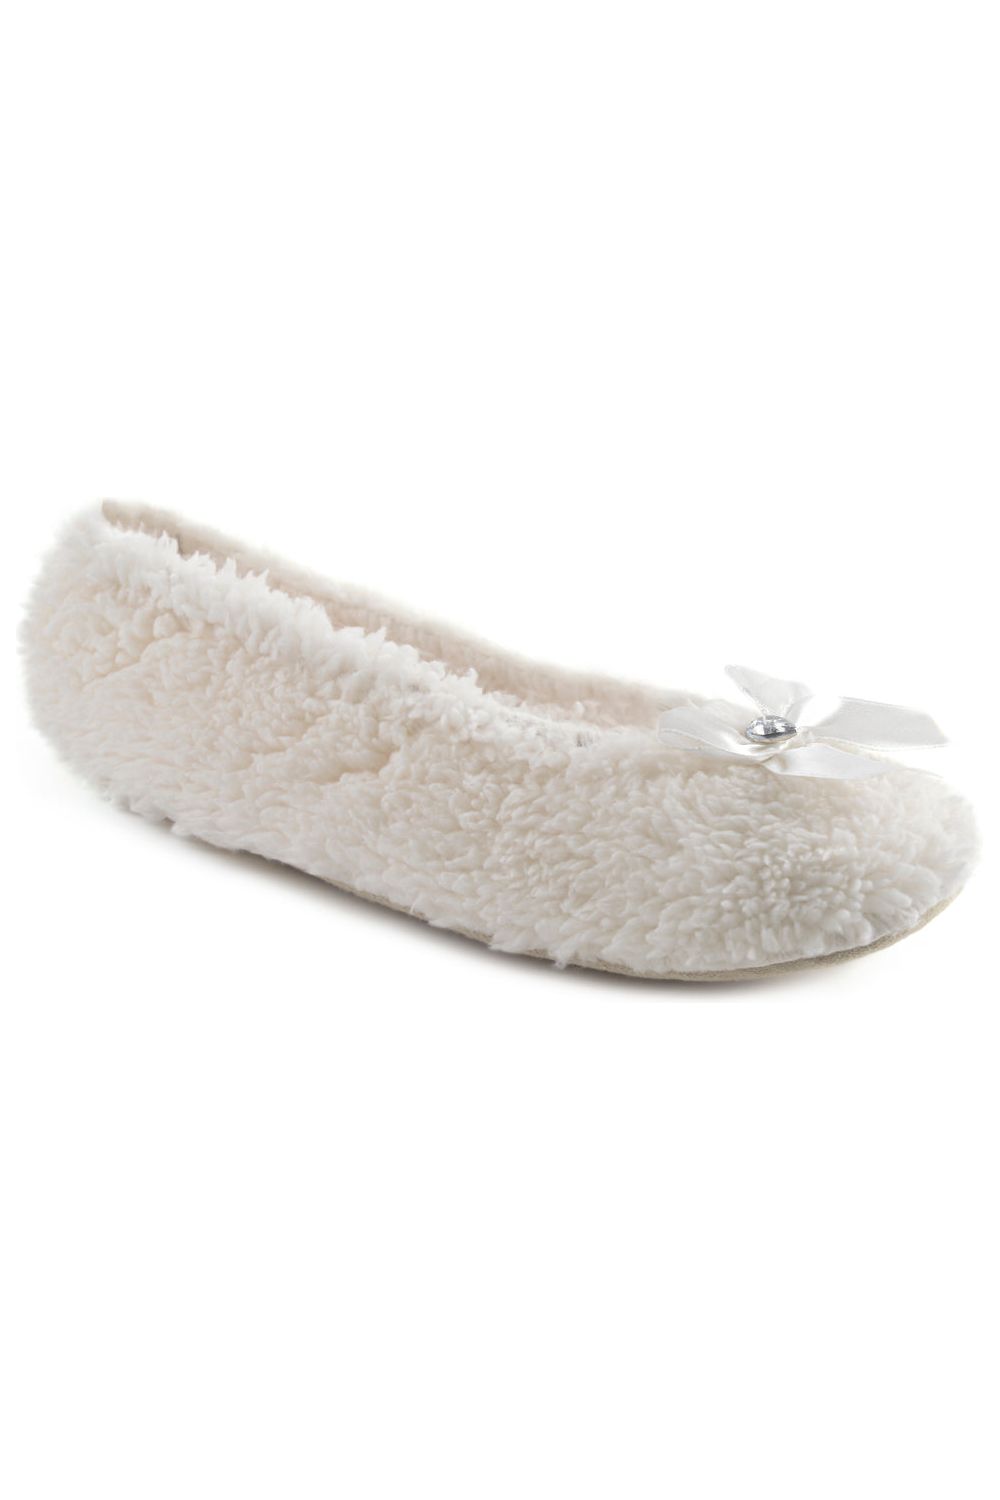 Women's White Fluffy Ballet Slippers